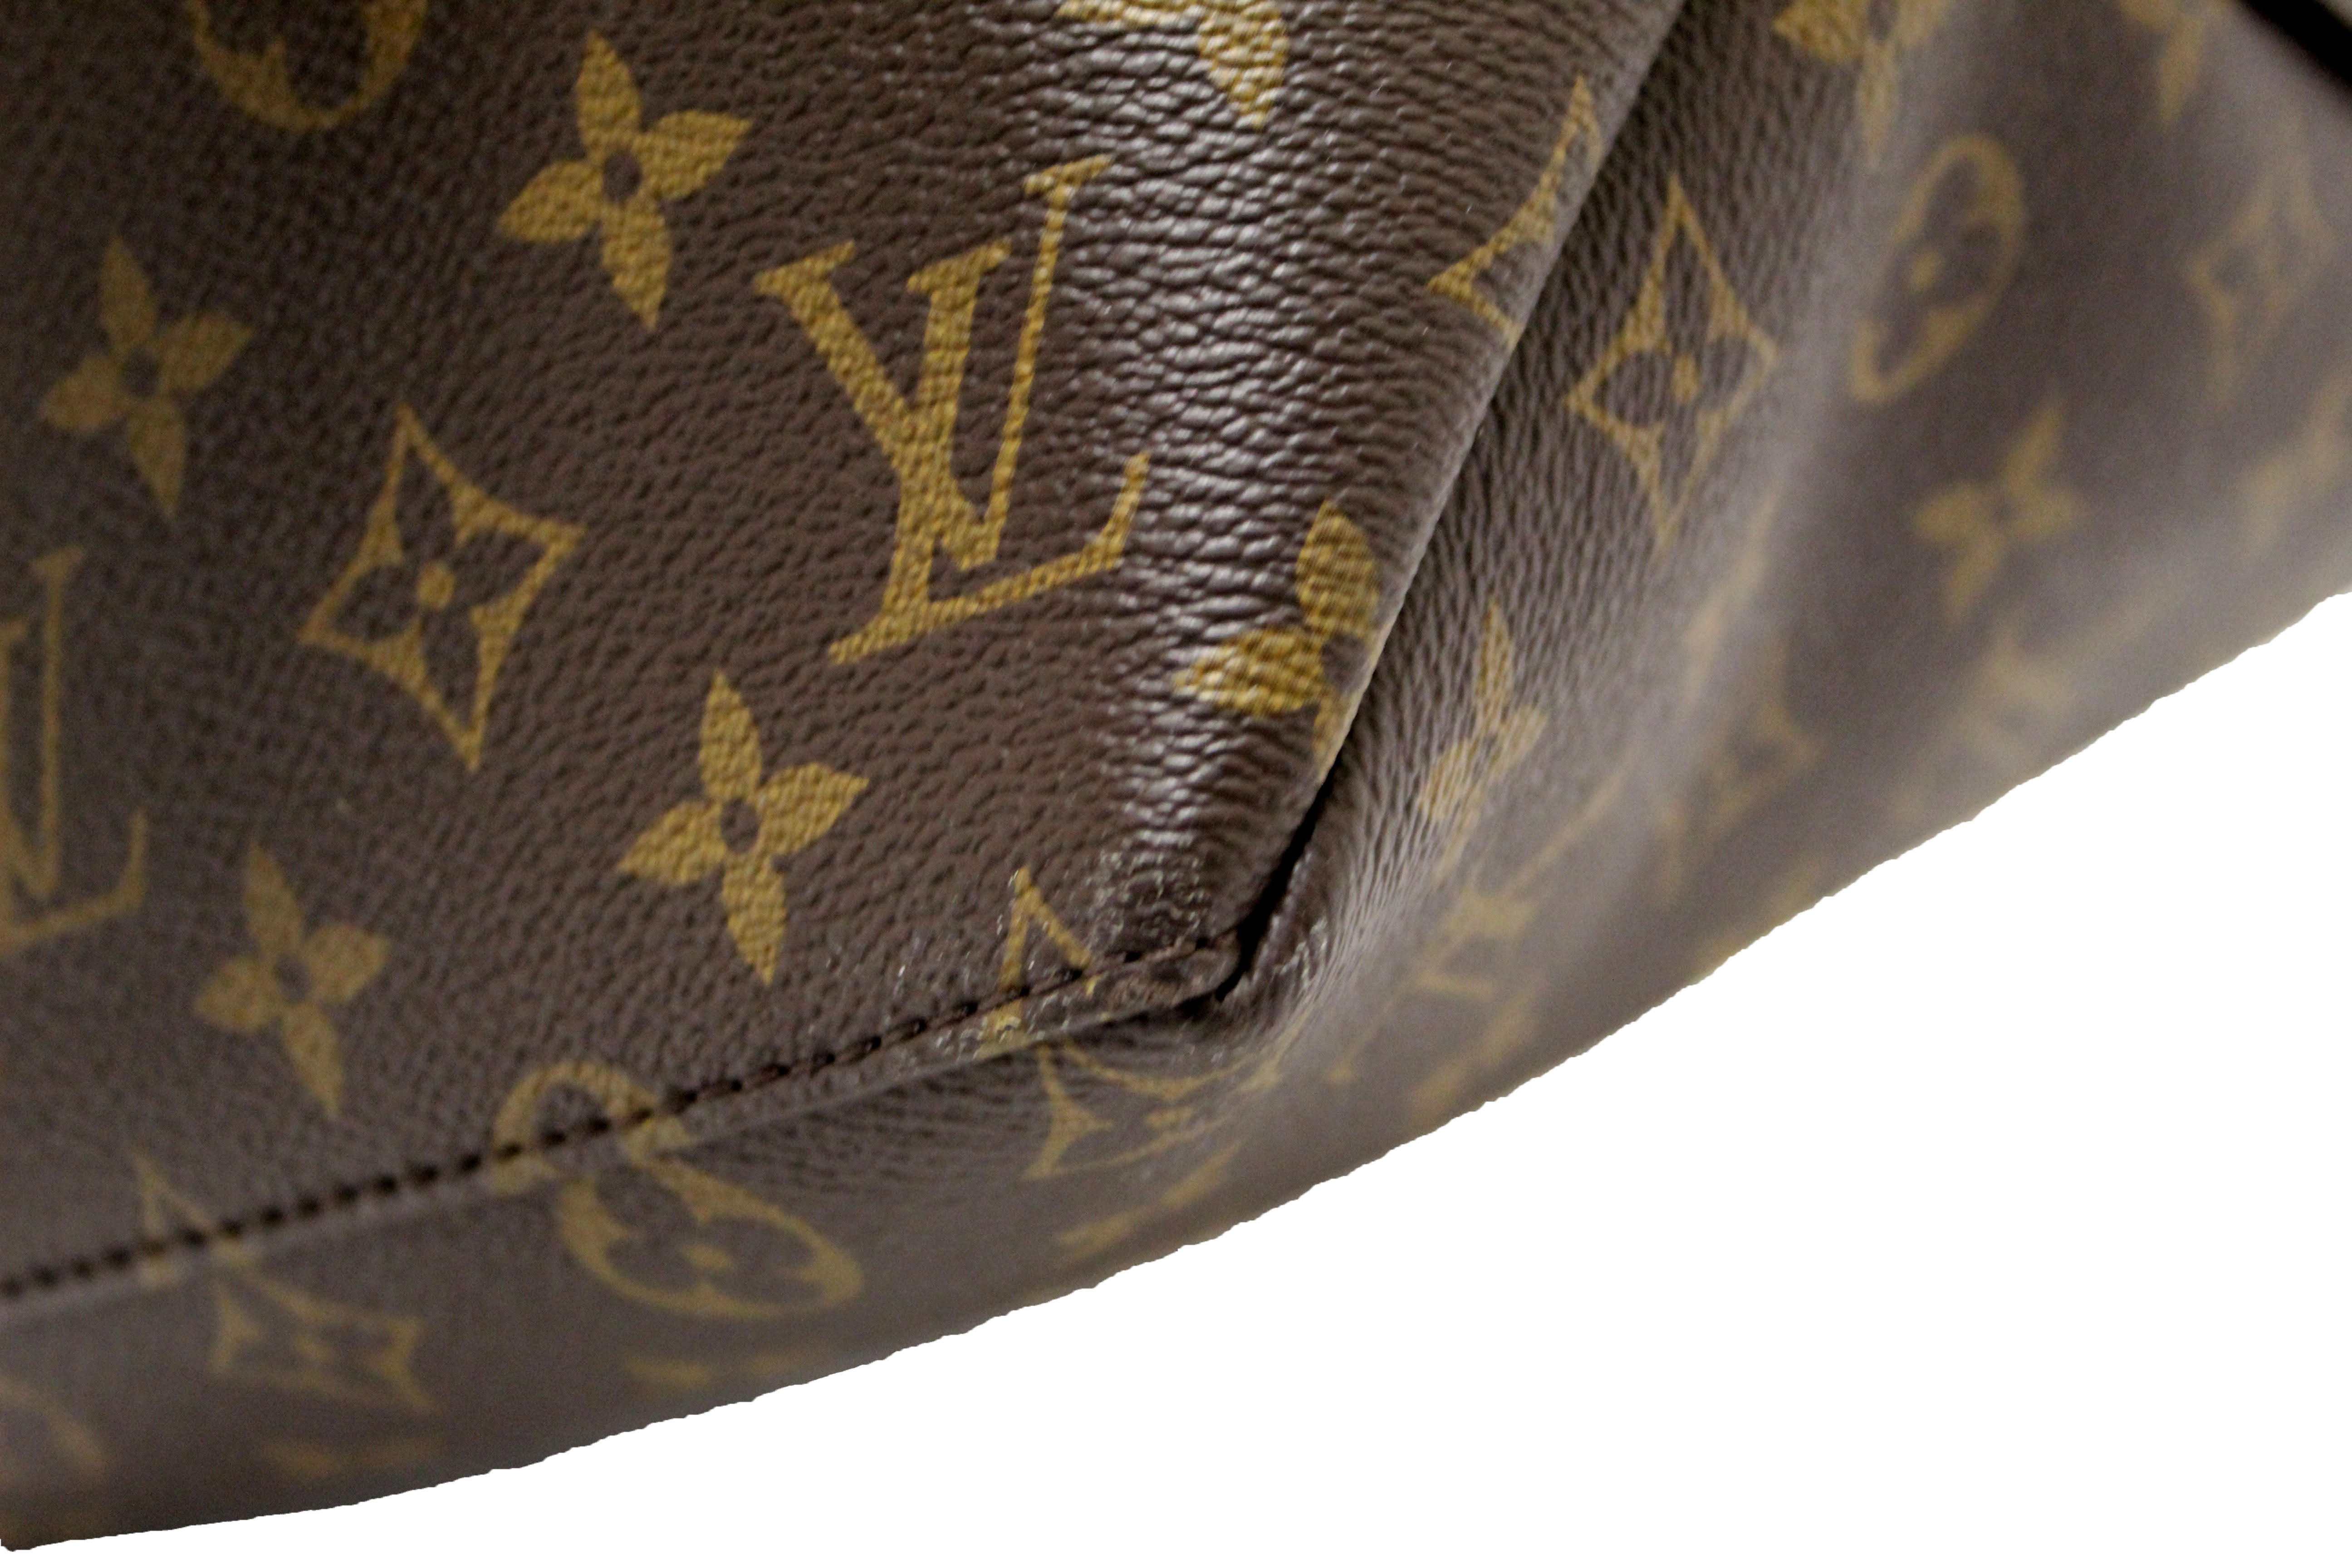 Authentic Louis Vuitton Classic Monogram Grand Palais Tote Bag